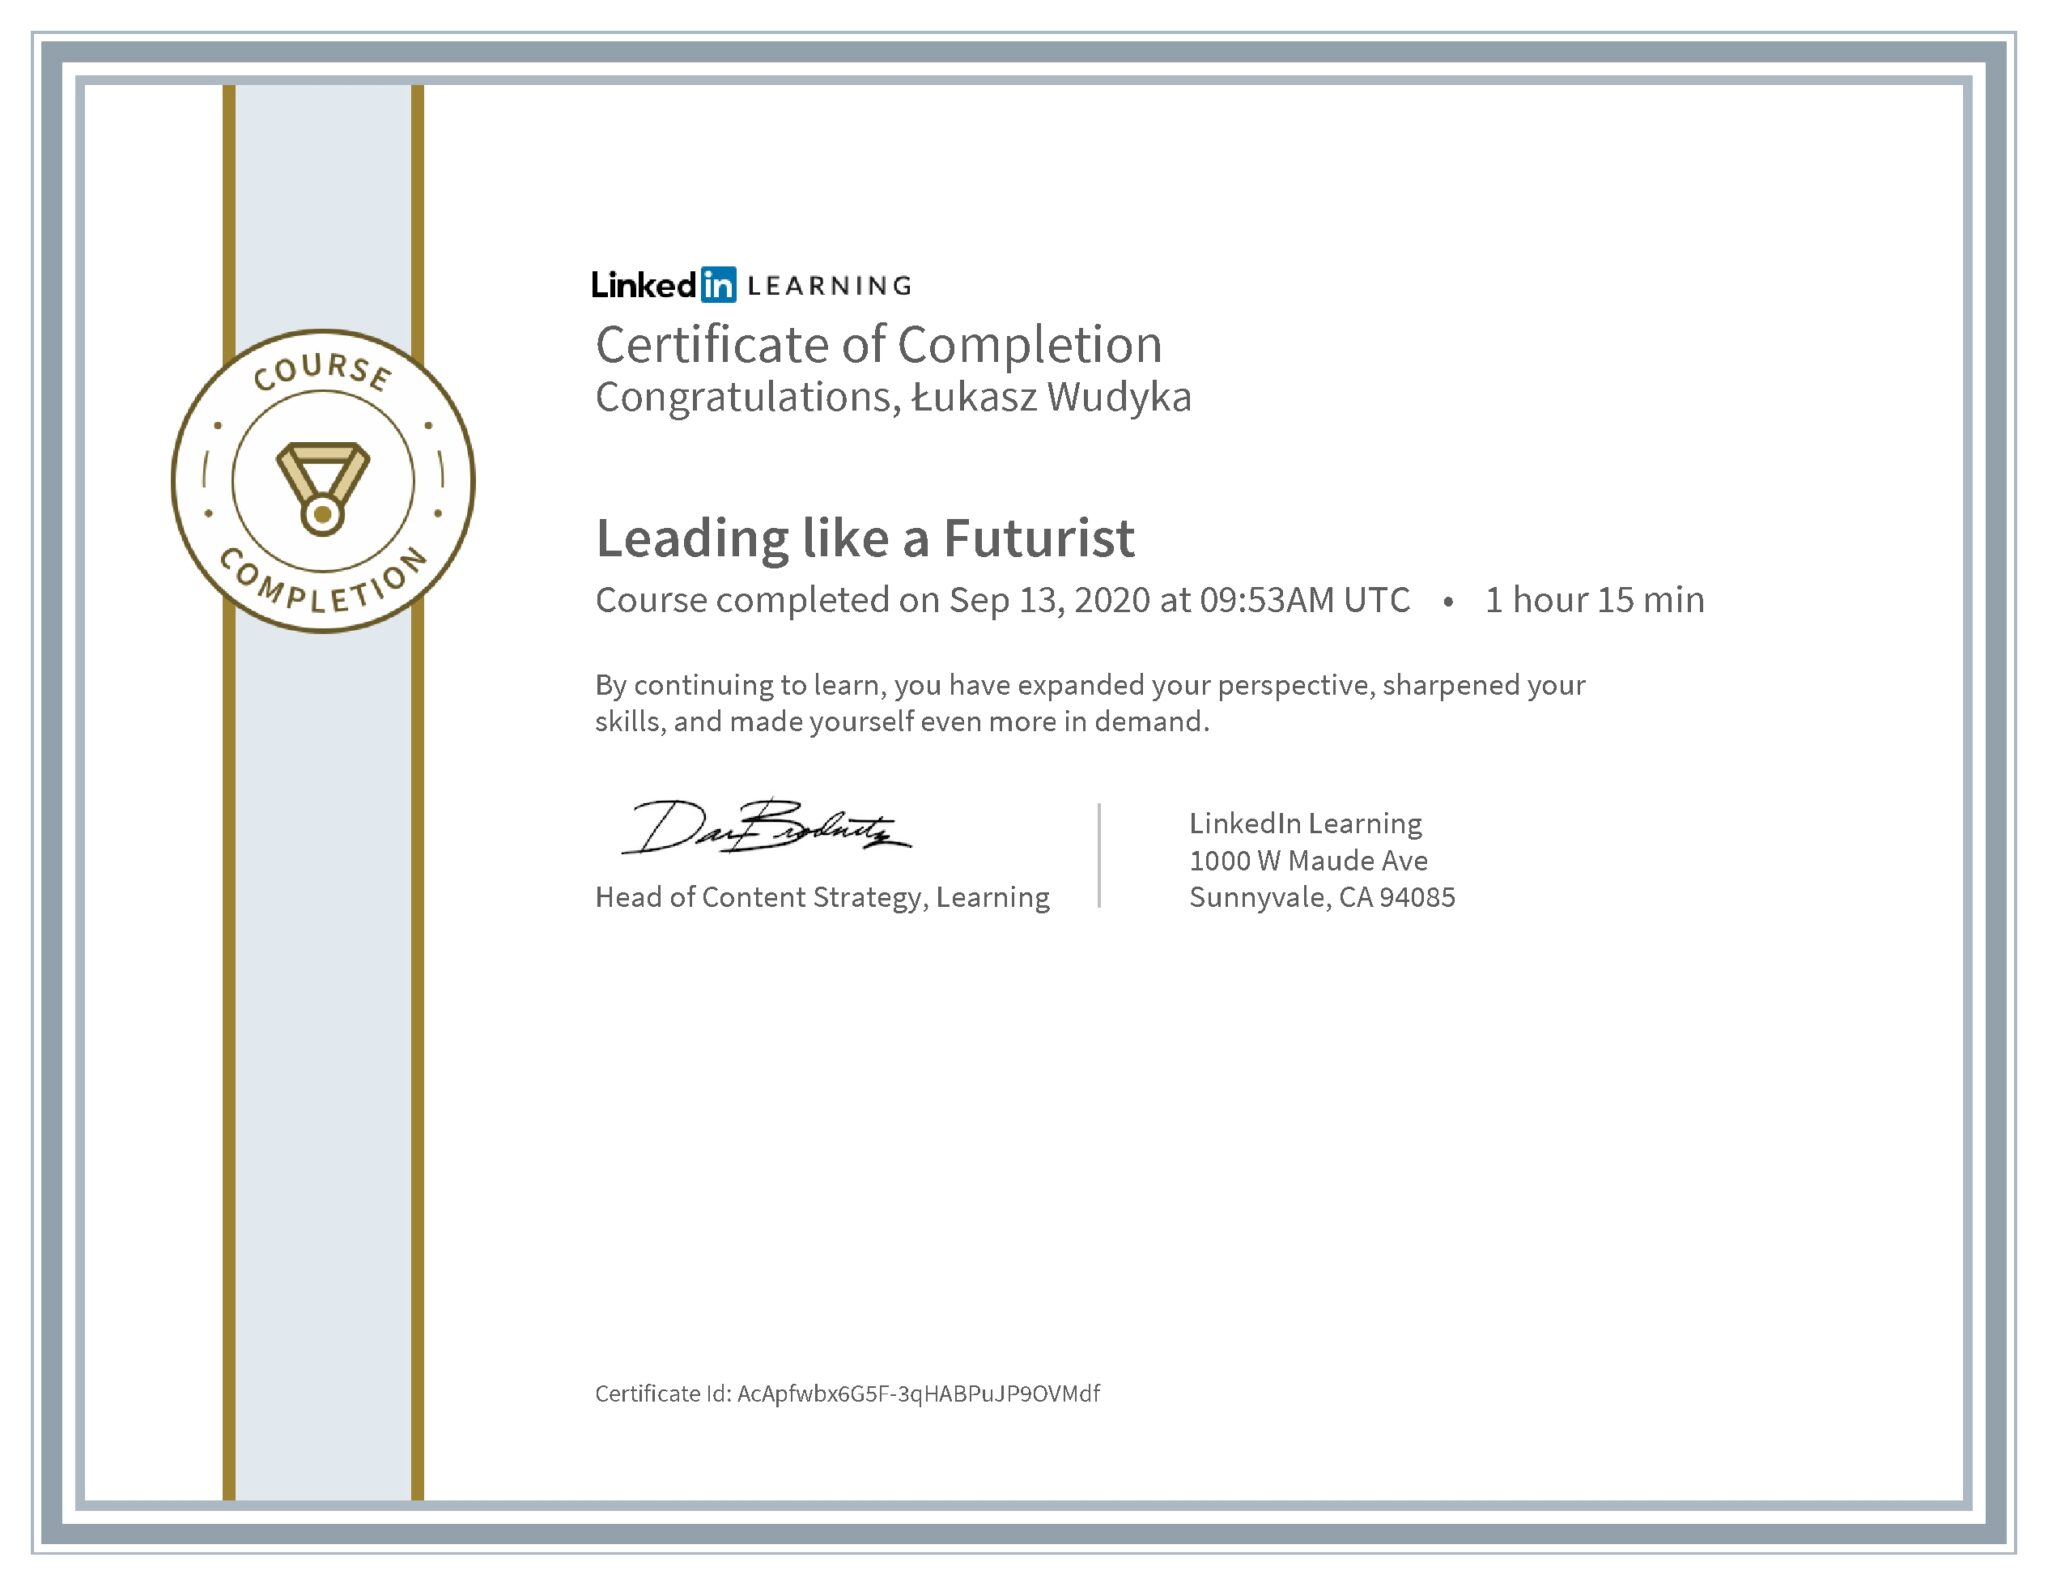 Łukasz Wudyka certyfikat LinkedIn Leading like a Futurist